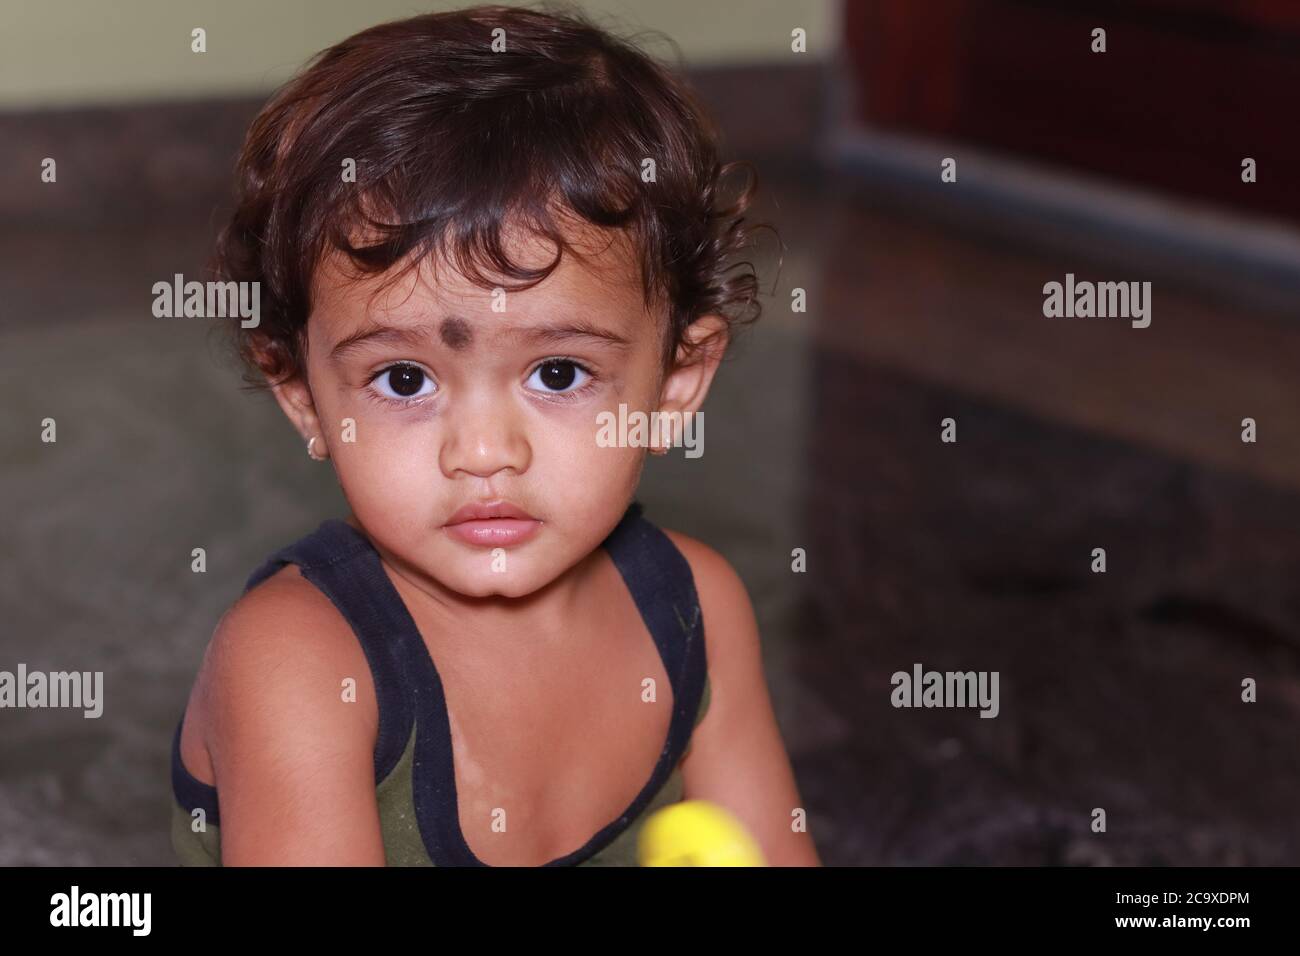 Ein Kind im Haus (Baby, Junge, Kinder) Blick auf die Kamera, Kind Portrait Bild, Kind Gesicht Stockfoto